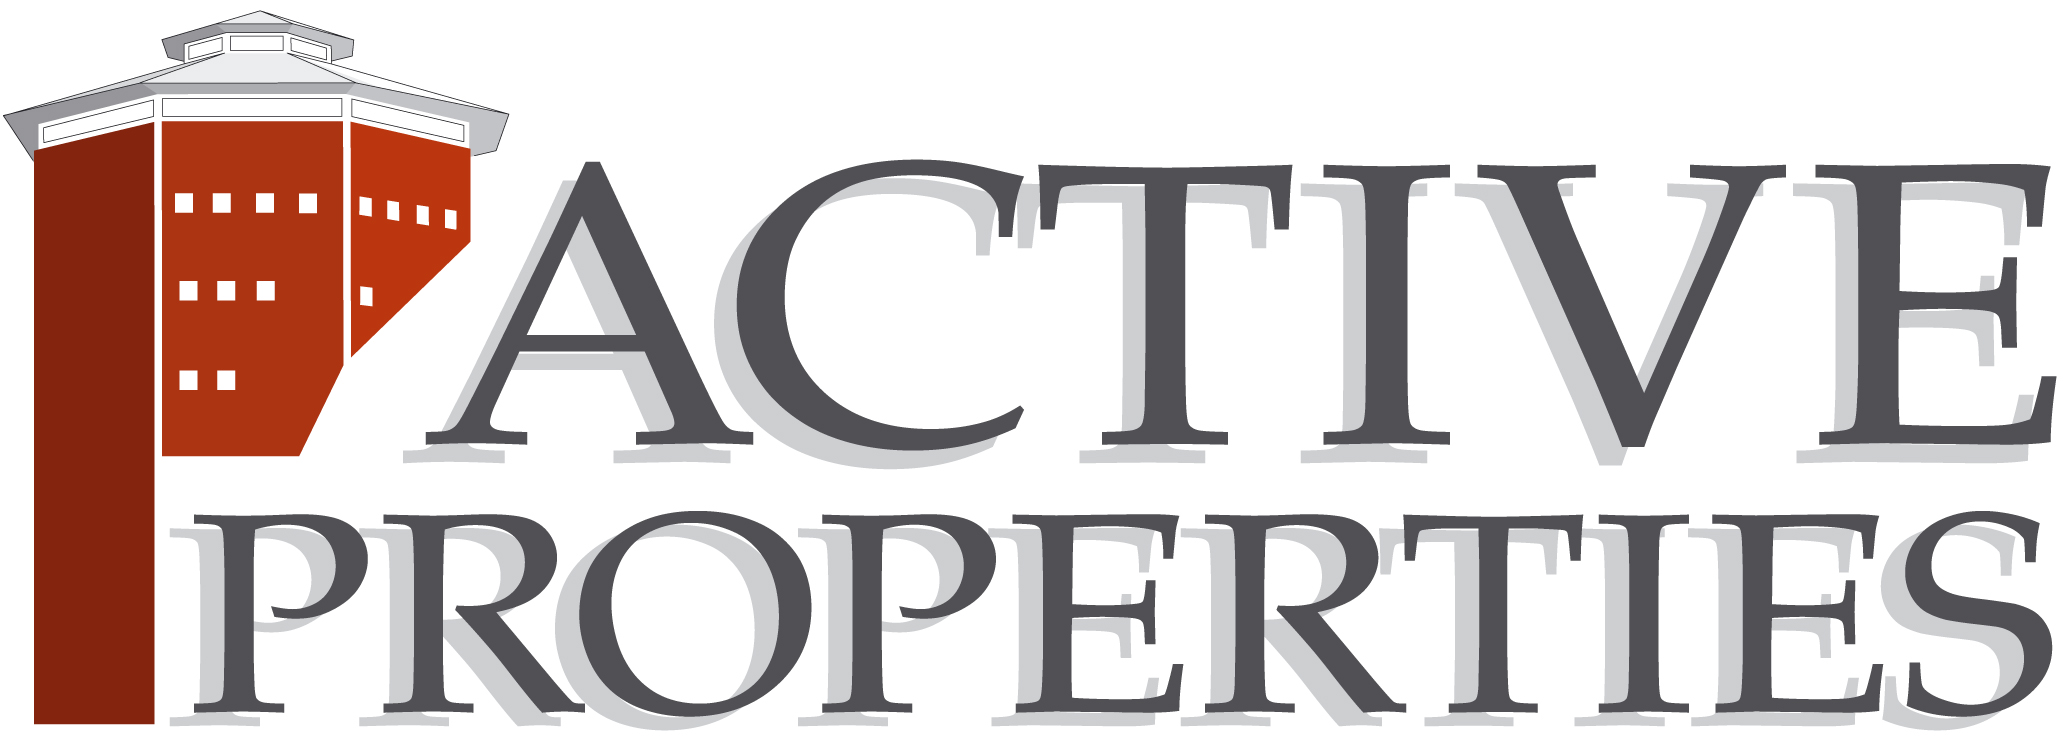 Active Properties B logo bild